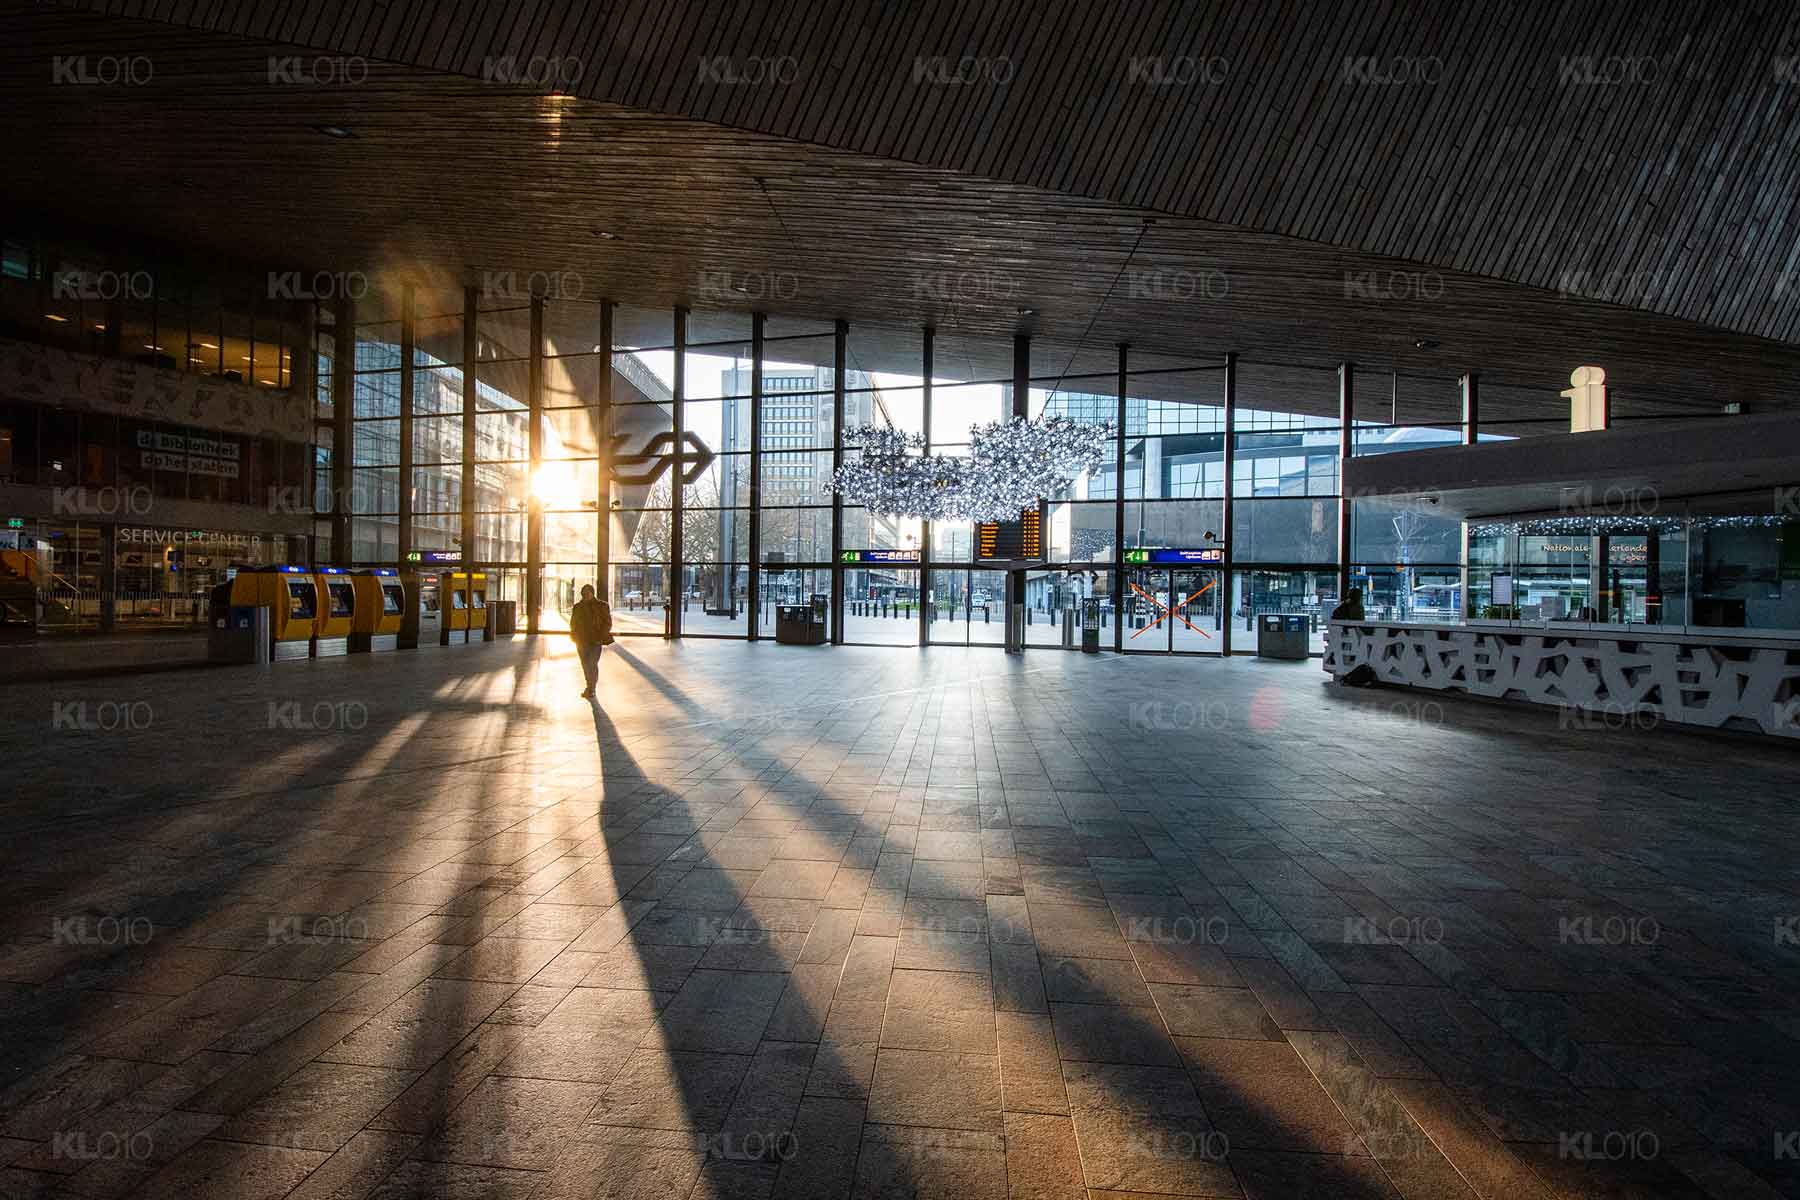 Rotterdam Centraal in de vroegte